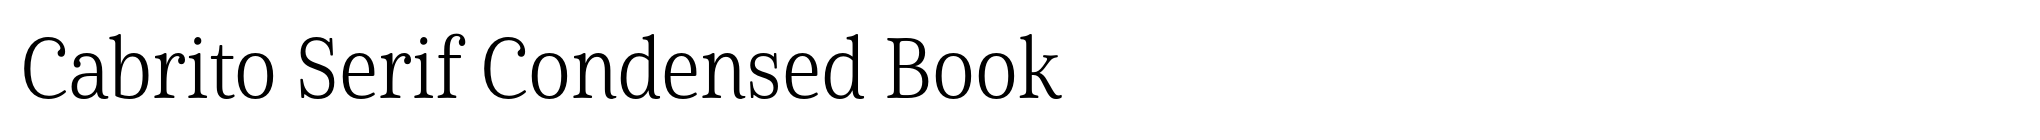 Cabrito Serif Condensed Book image